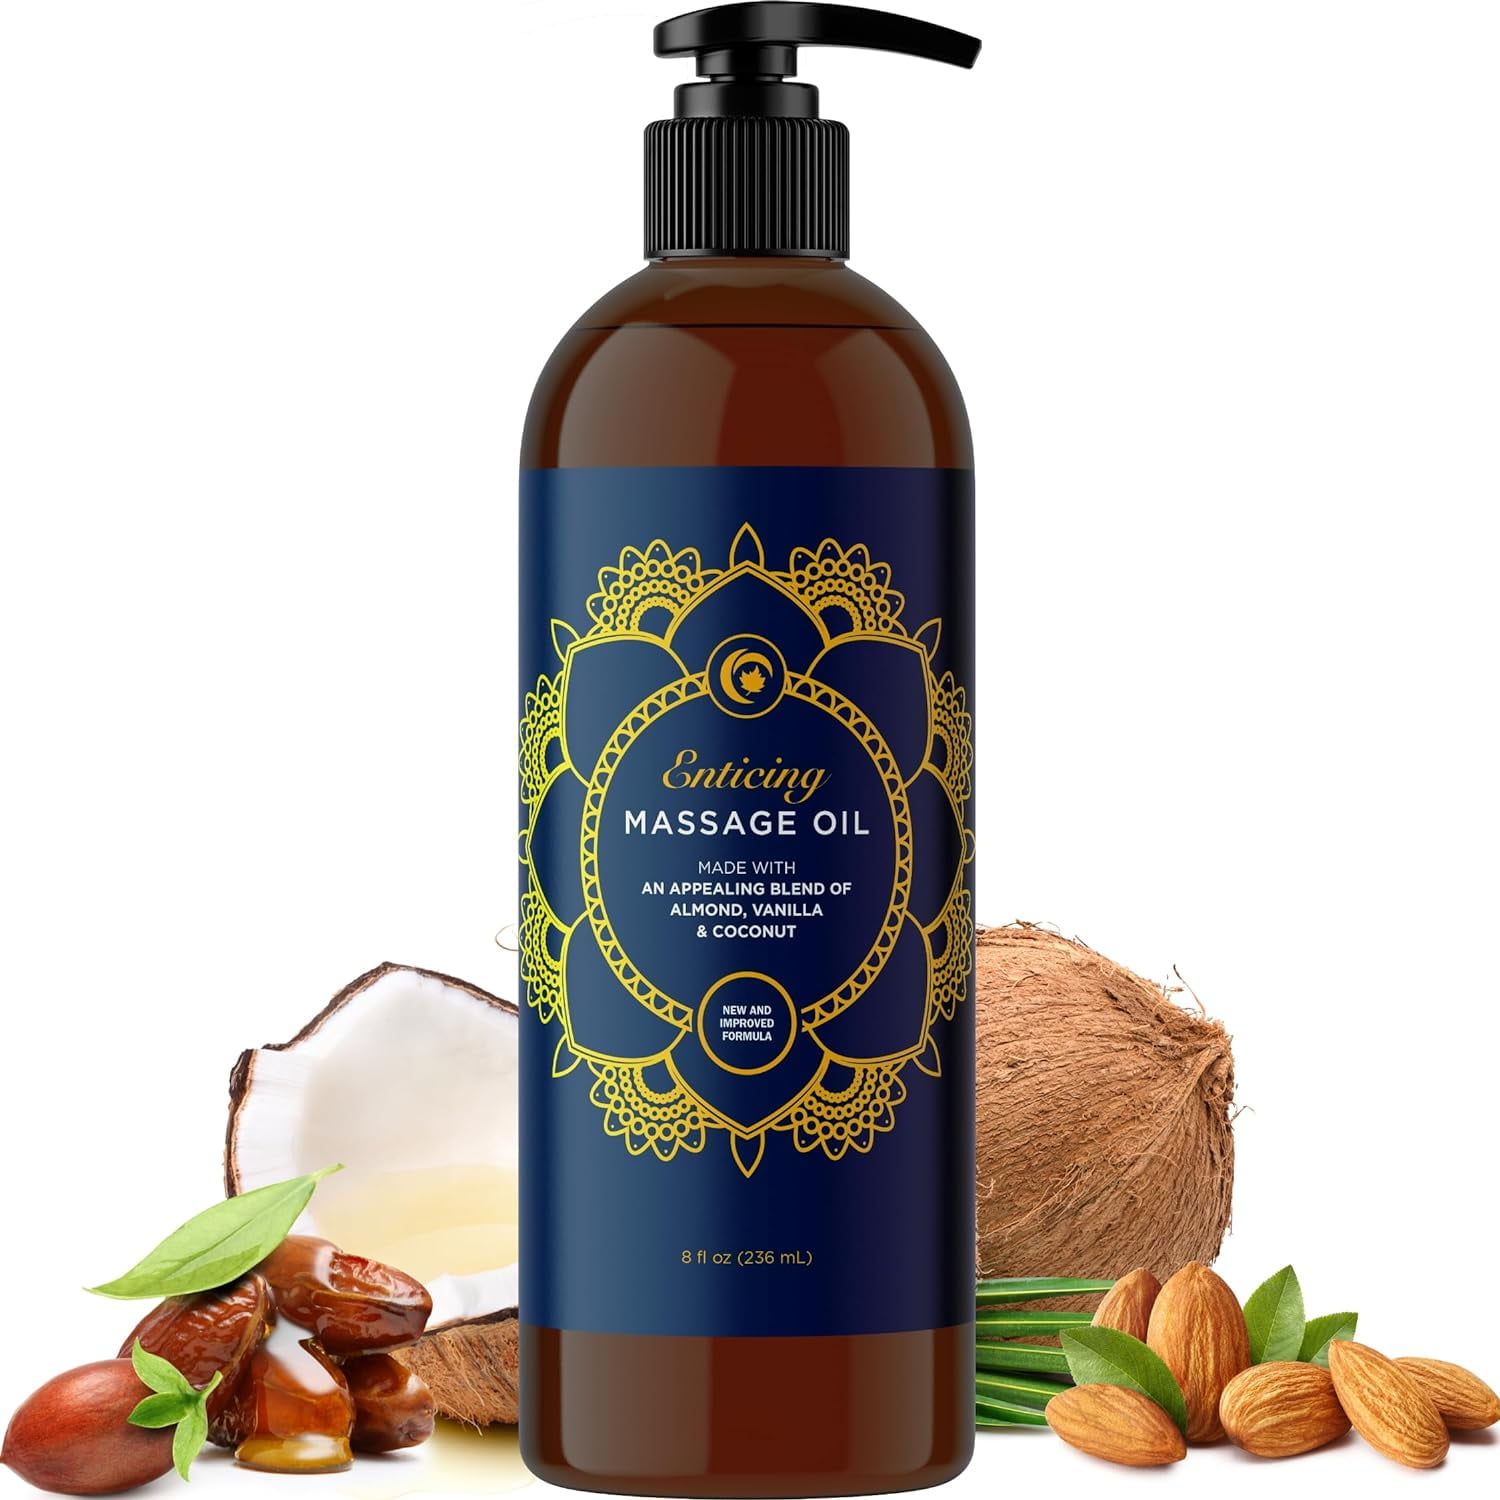 Vanilla Face & Body Oil | Vanilla Bean Oil | All Natural | No Essential  Oils! | Bath Oil, Facial Oil, Massage Oil | Gift for Her 